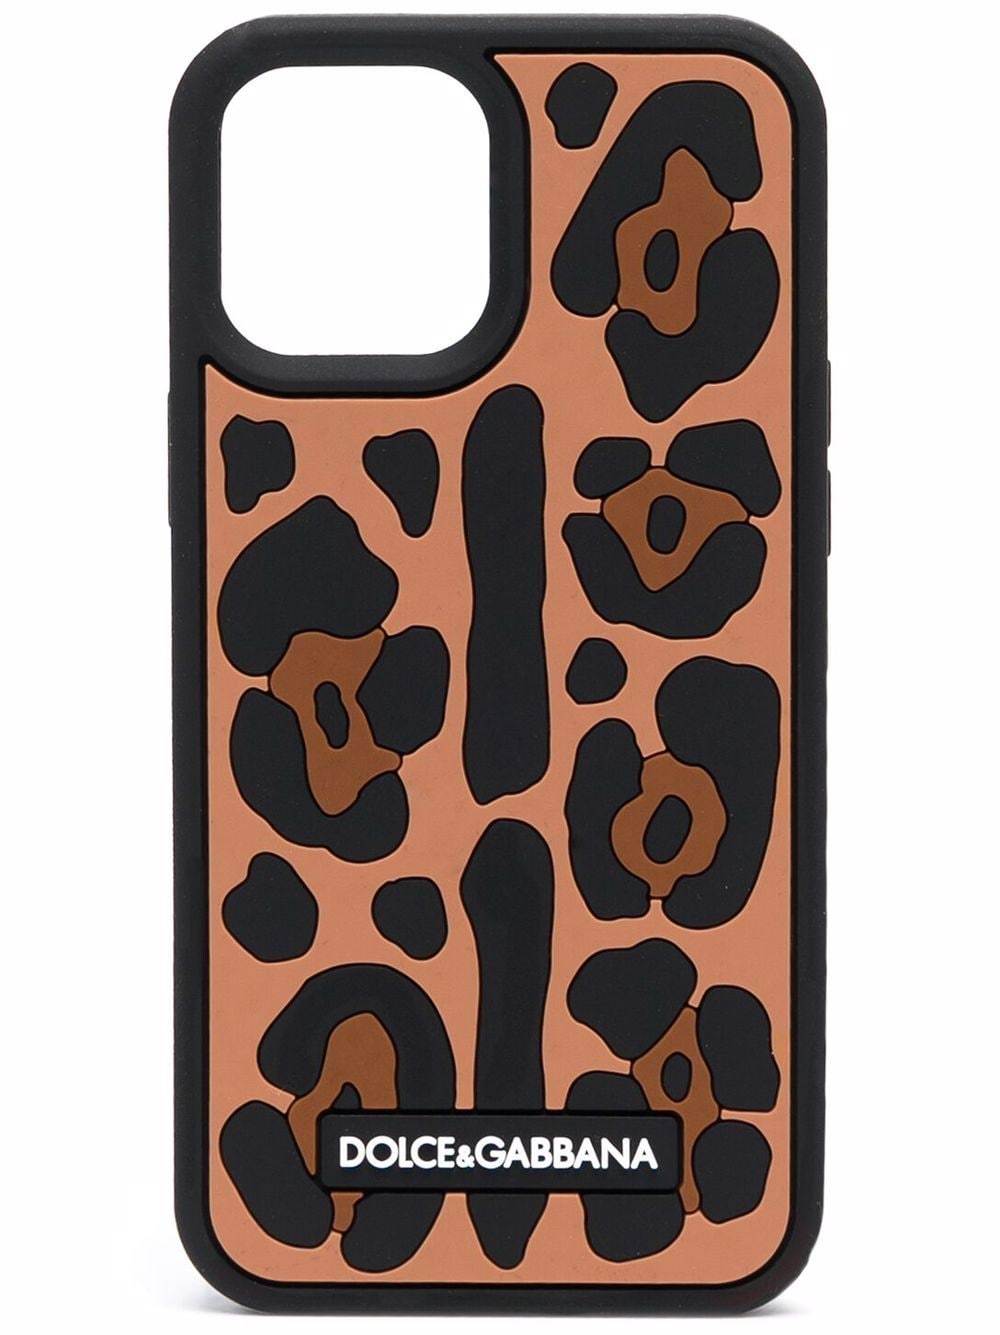 фото Dolce & gabbana чехол для iphone 12 pro с леопардовым принтом